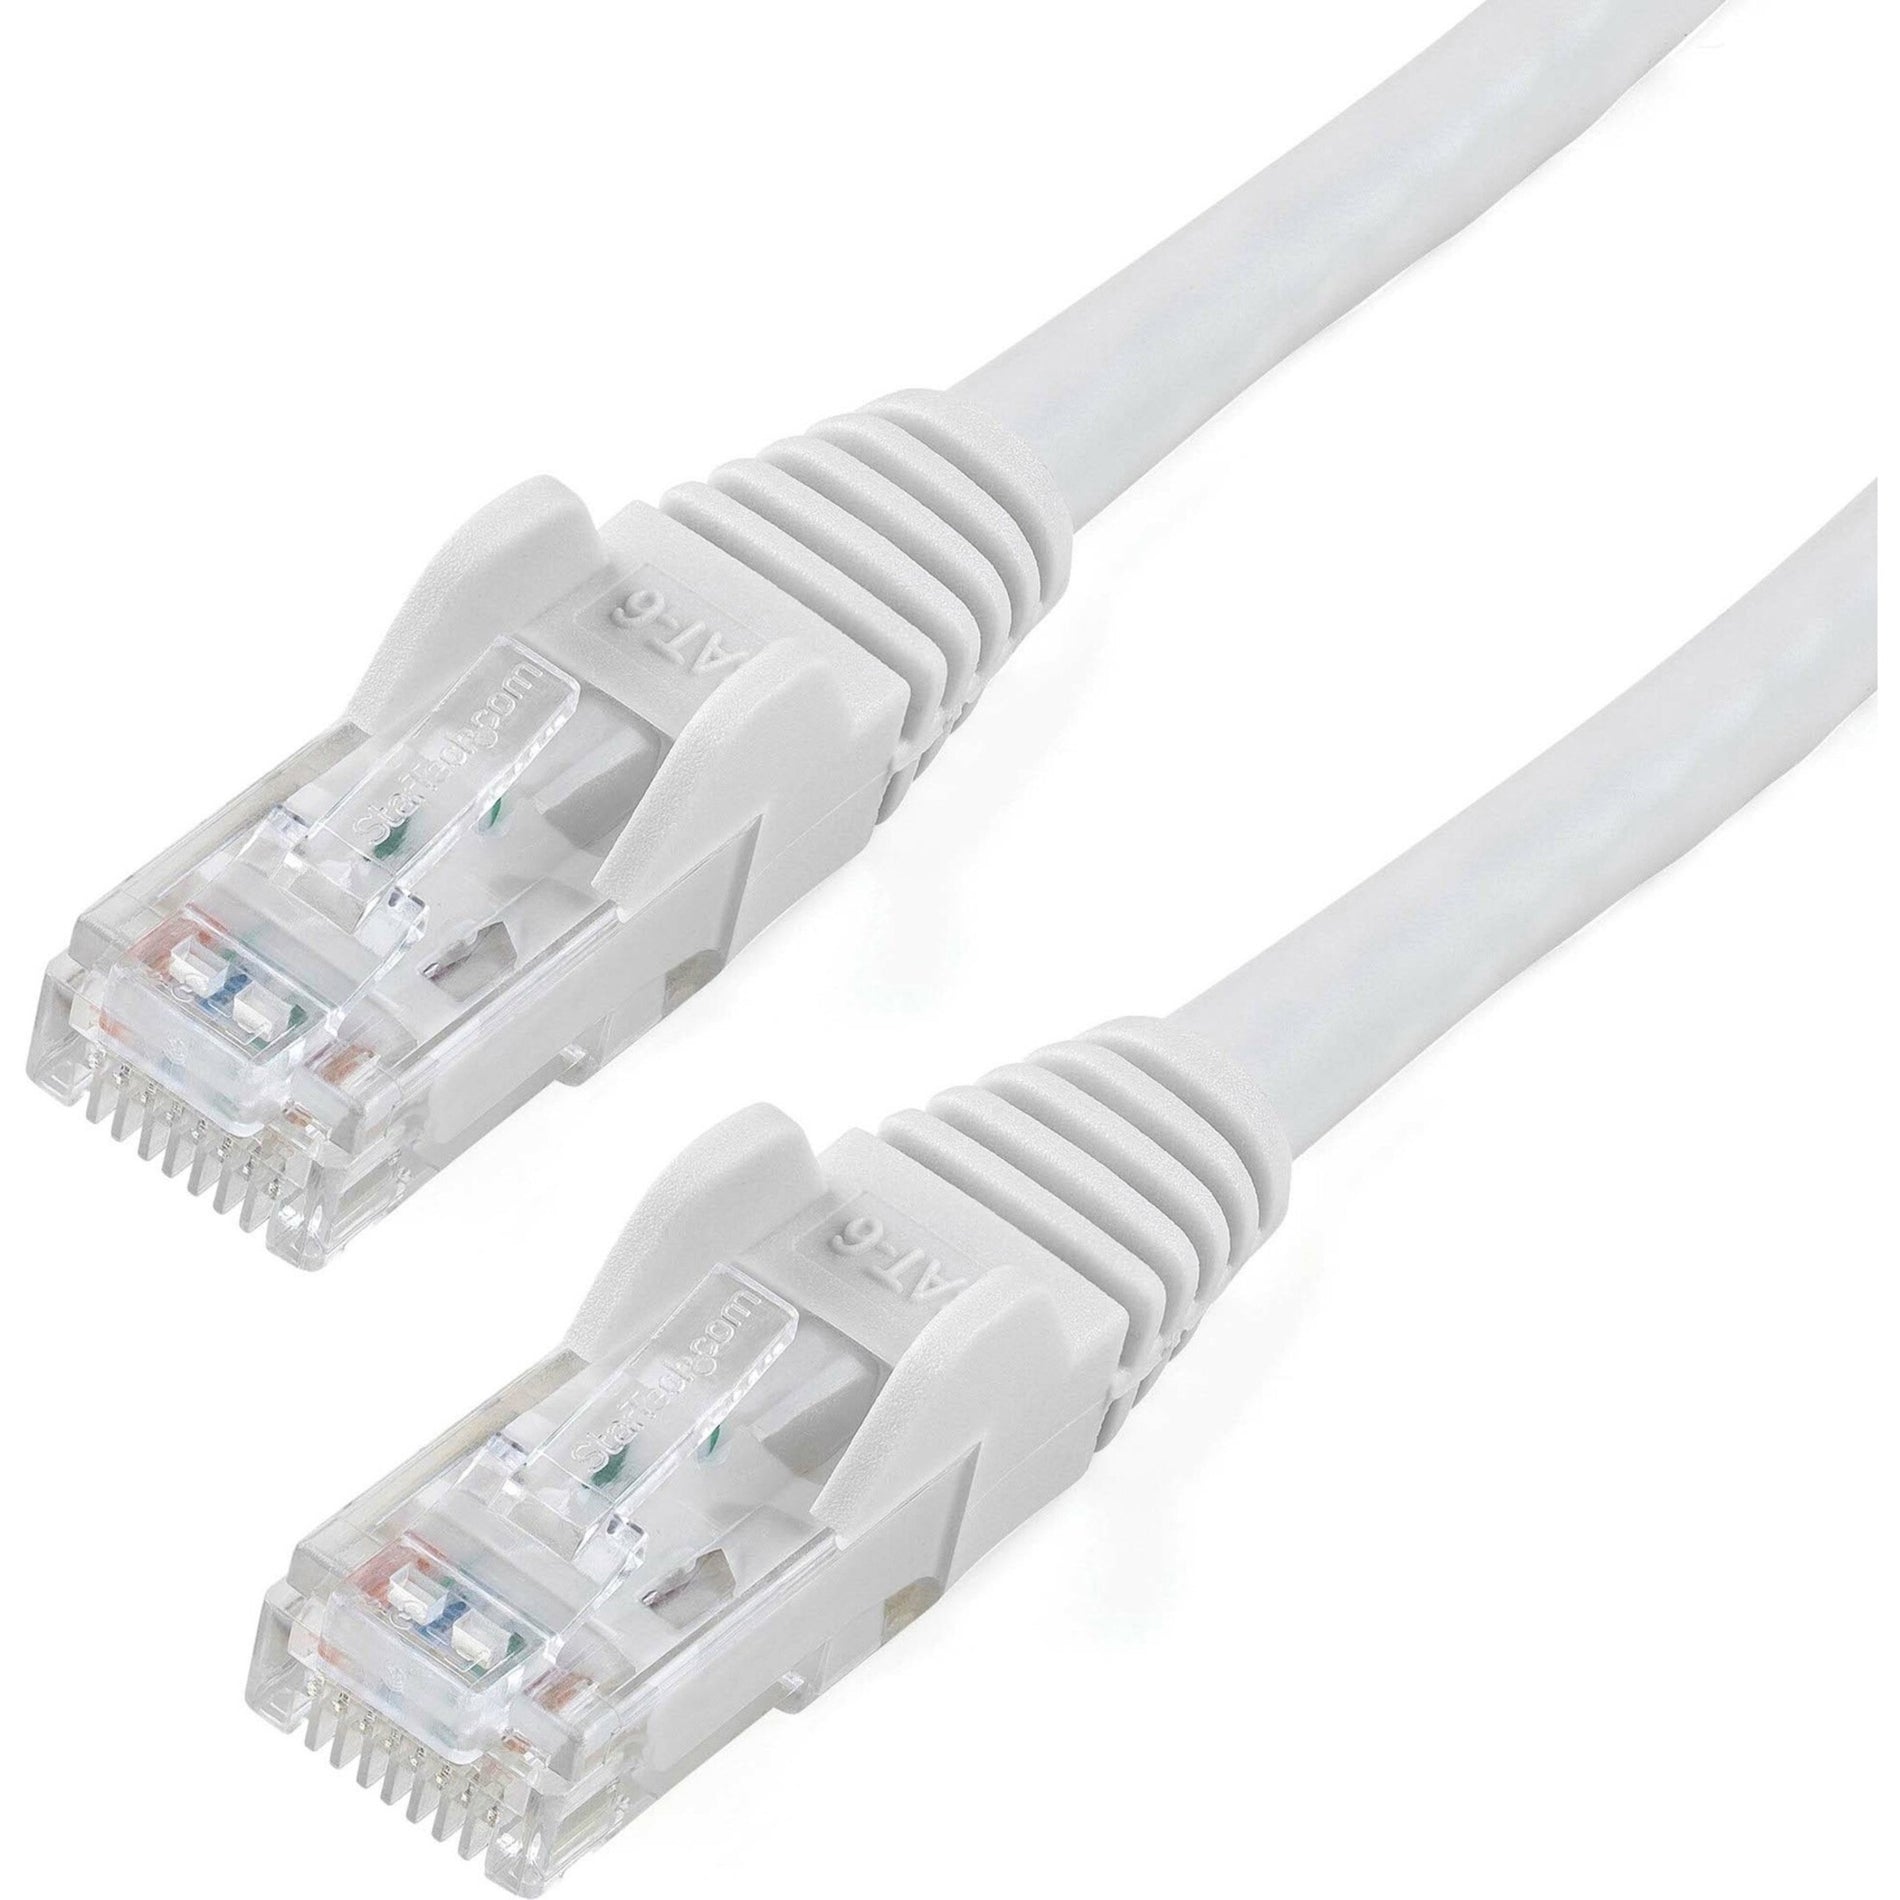 StarTech.com N6PATCH150WH Cat6 Patch Kabel 150ft Weiß Ethernet Kabel Snagless RJ45 Steckverbinder